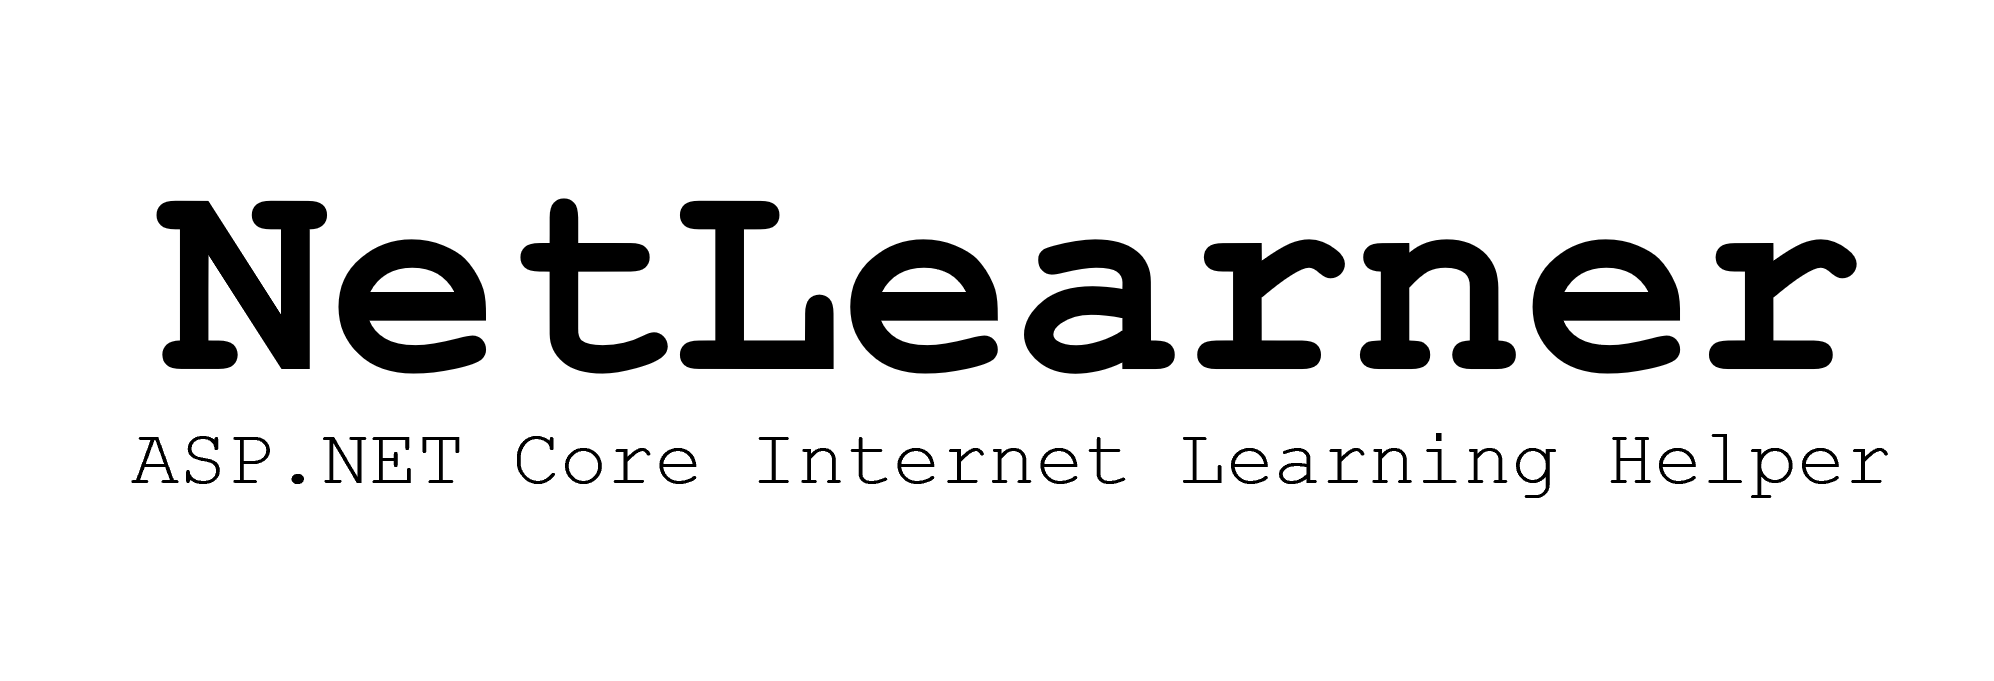 NetLearner-logo